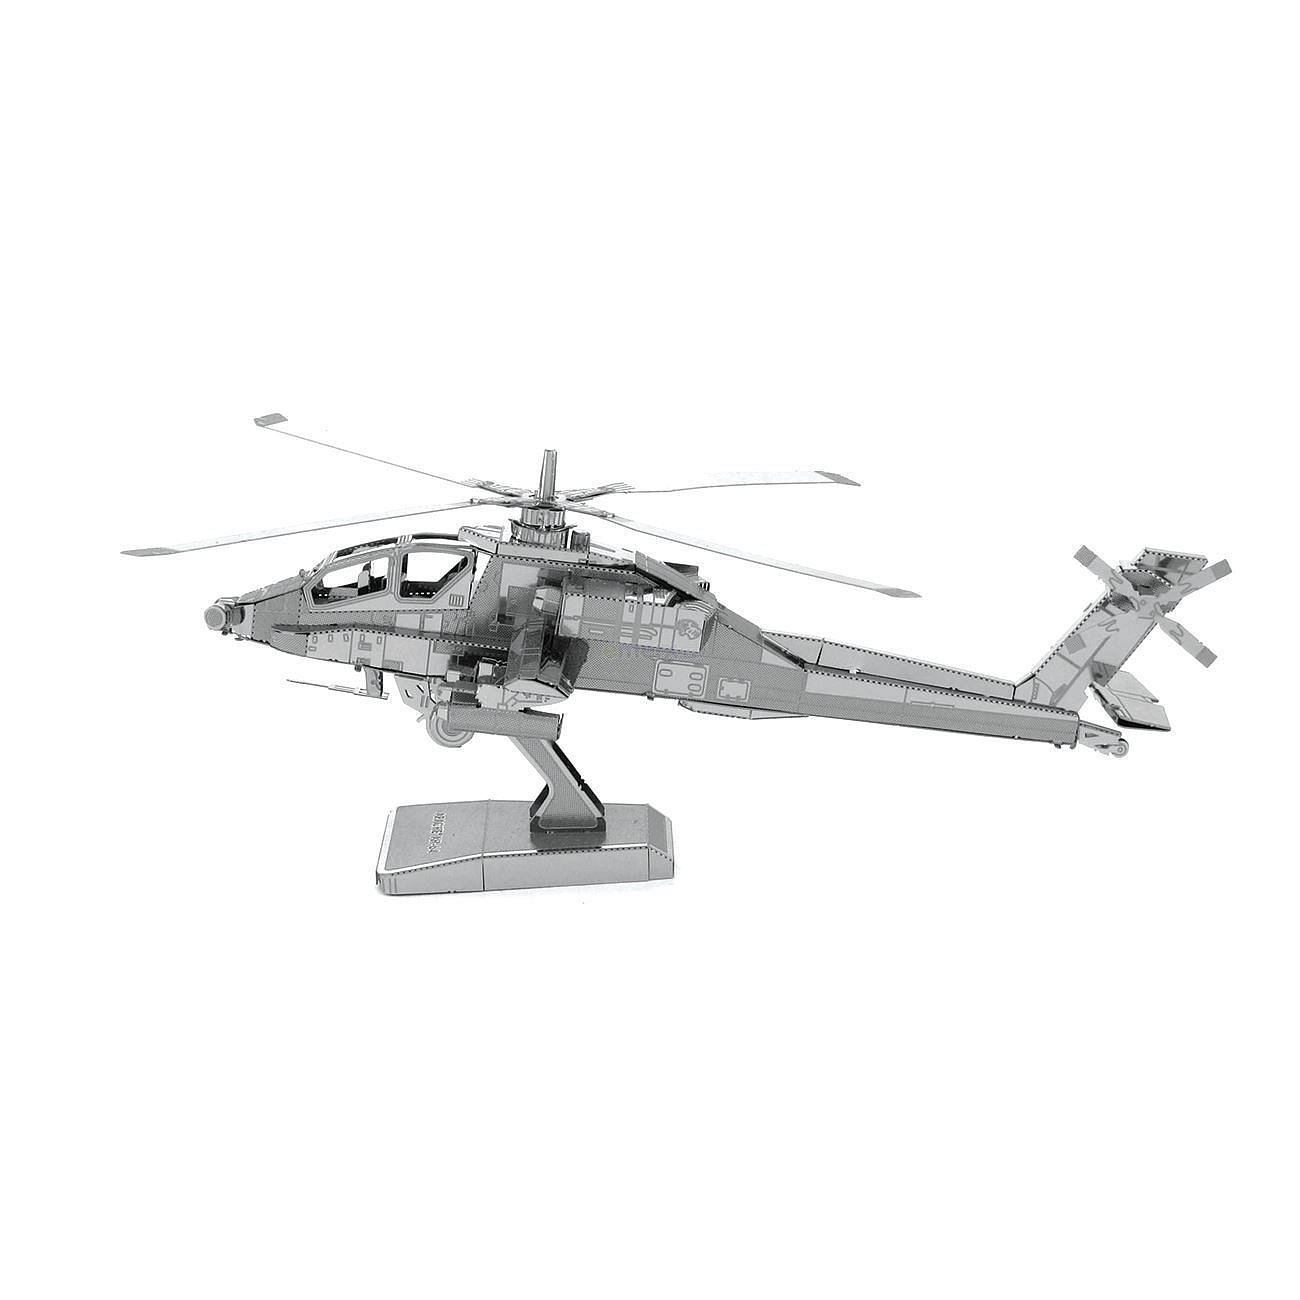 Stavebnice kovového modelu Metal Earth MMS083 AH-64 Apache (032309010831)